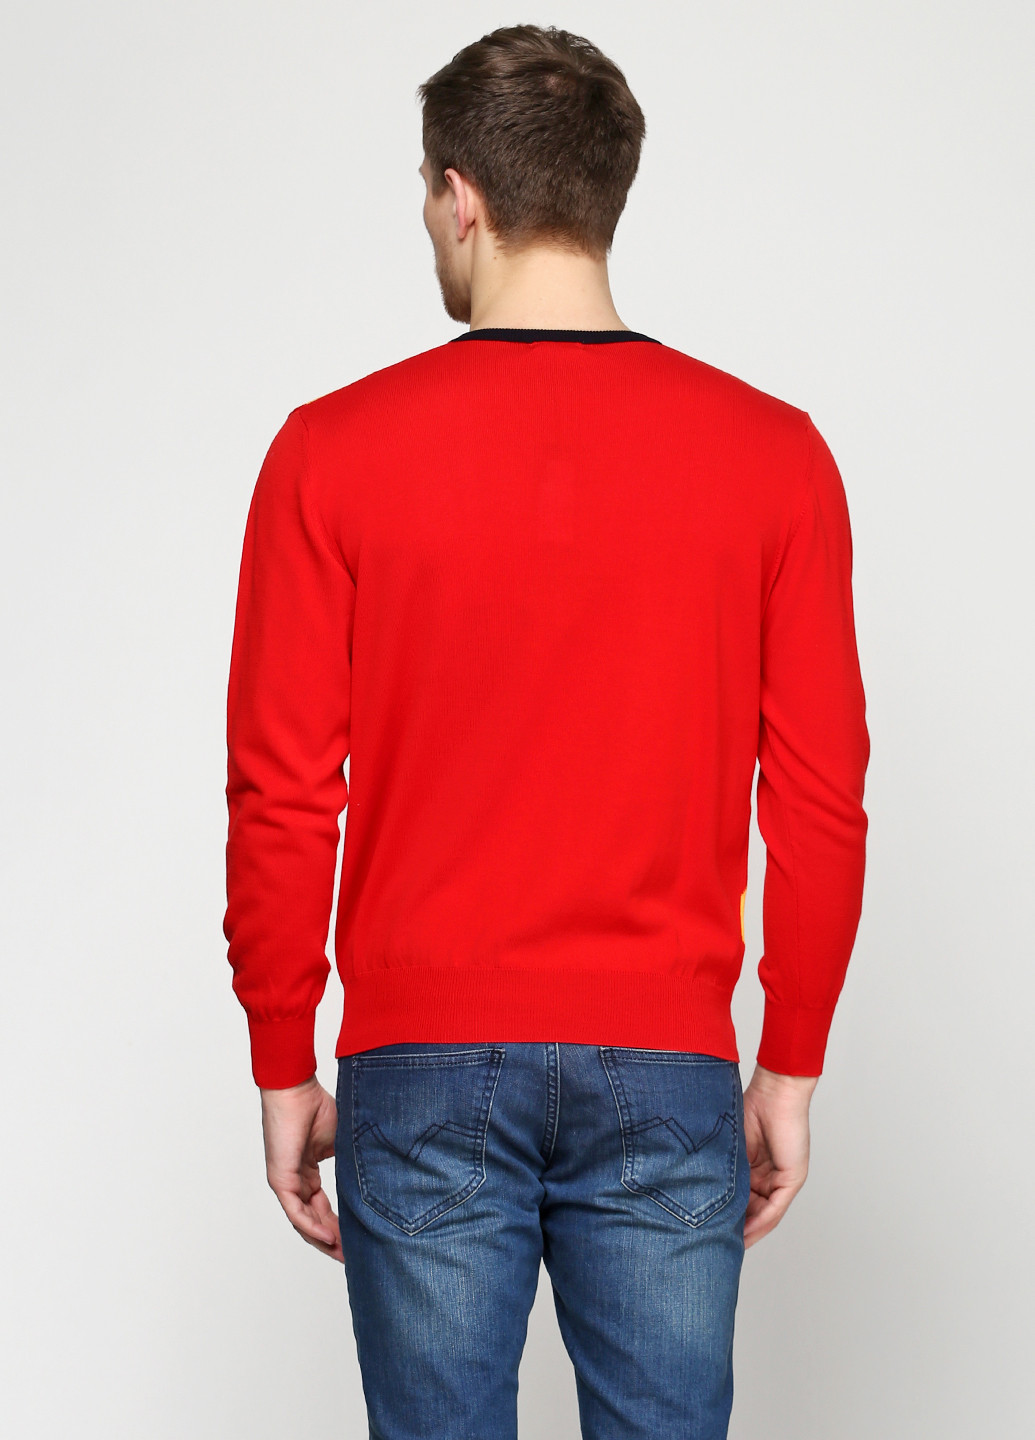 Красный демисезонный пуловер пуловер Barbieri